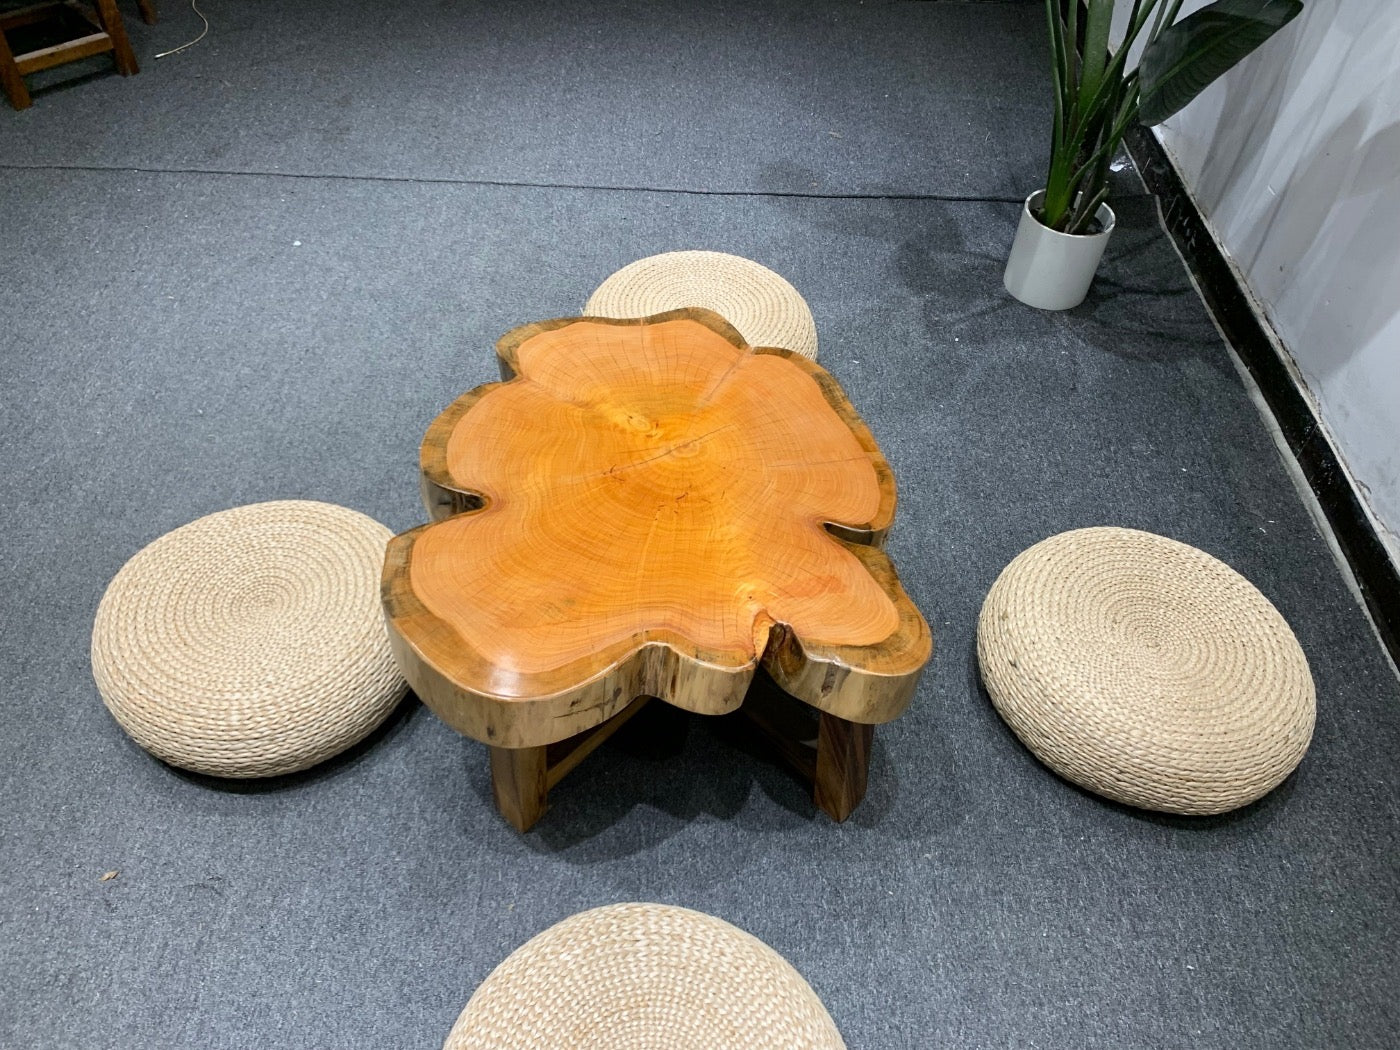 mesa de centro de granja, mesa de centro ovalada, mesa de centro pequeña, mesa de centro blanca, mesa de centro de madera